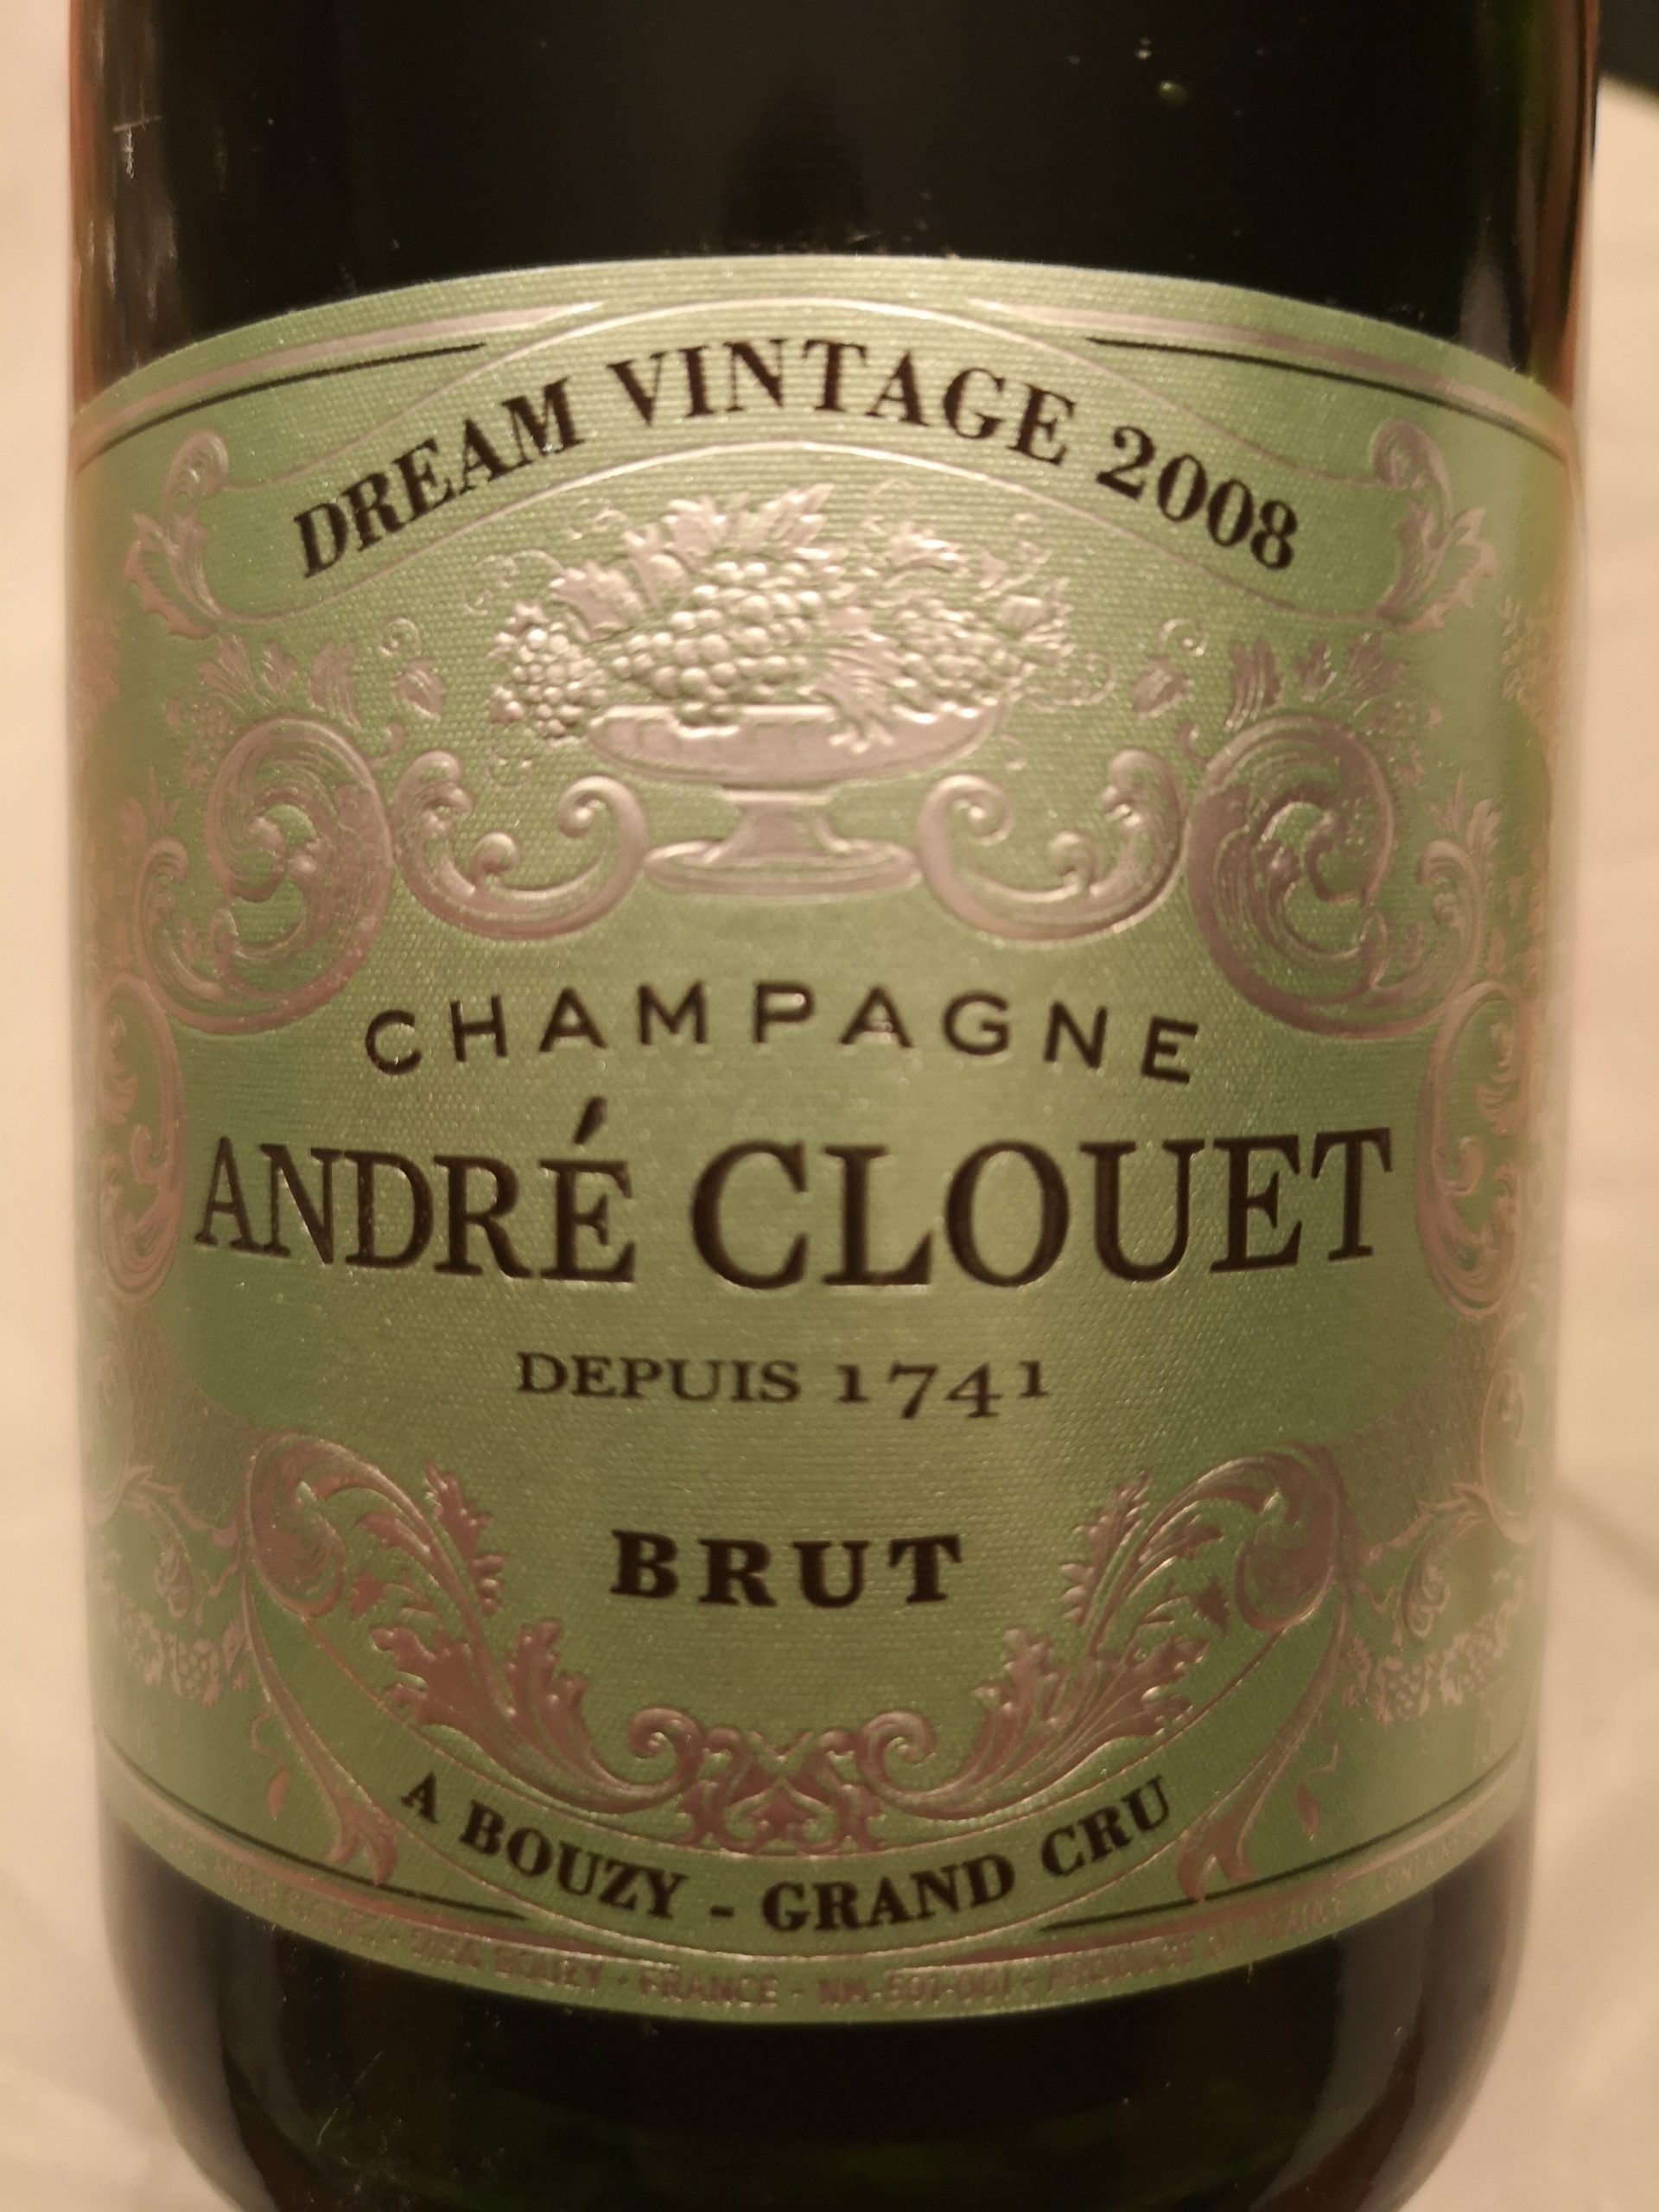 2008 Champagne Brut Millesime Grand Cru Dream Vintage | Clouet